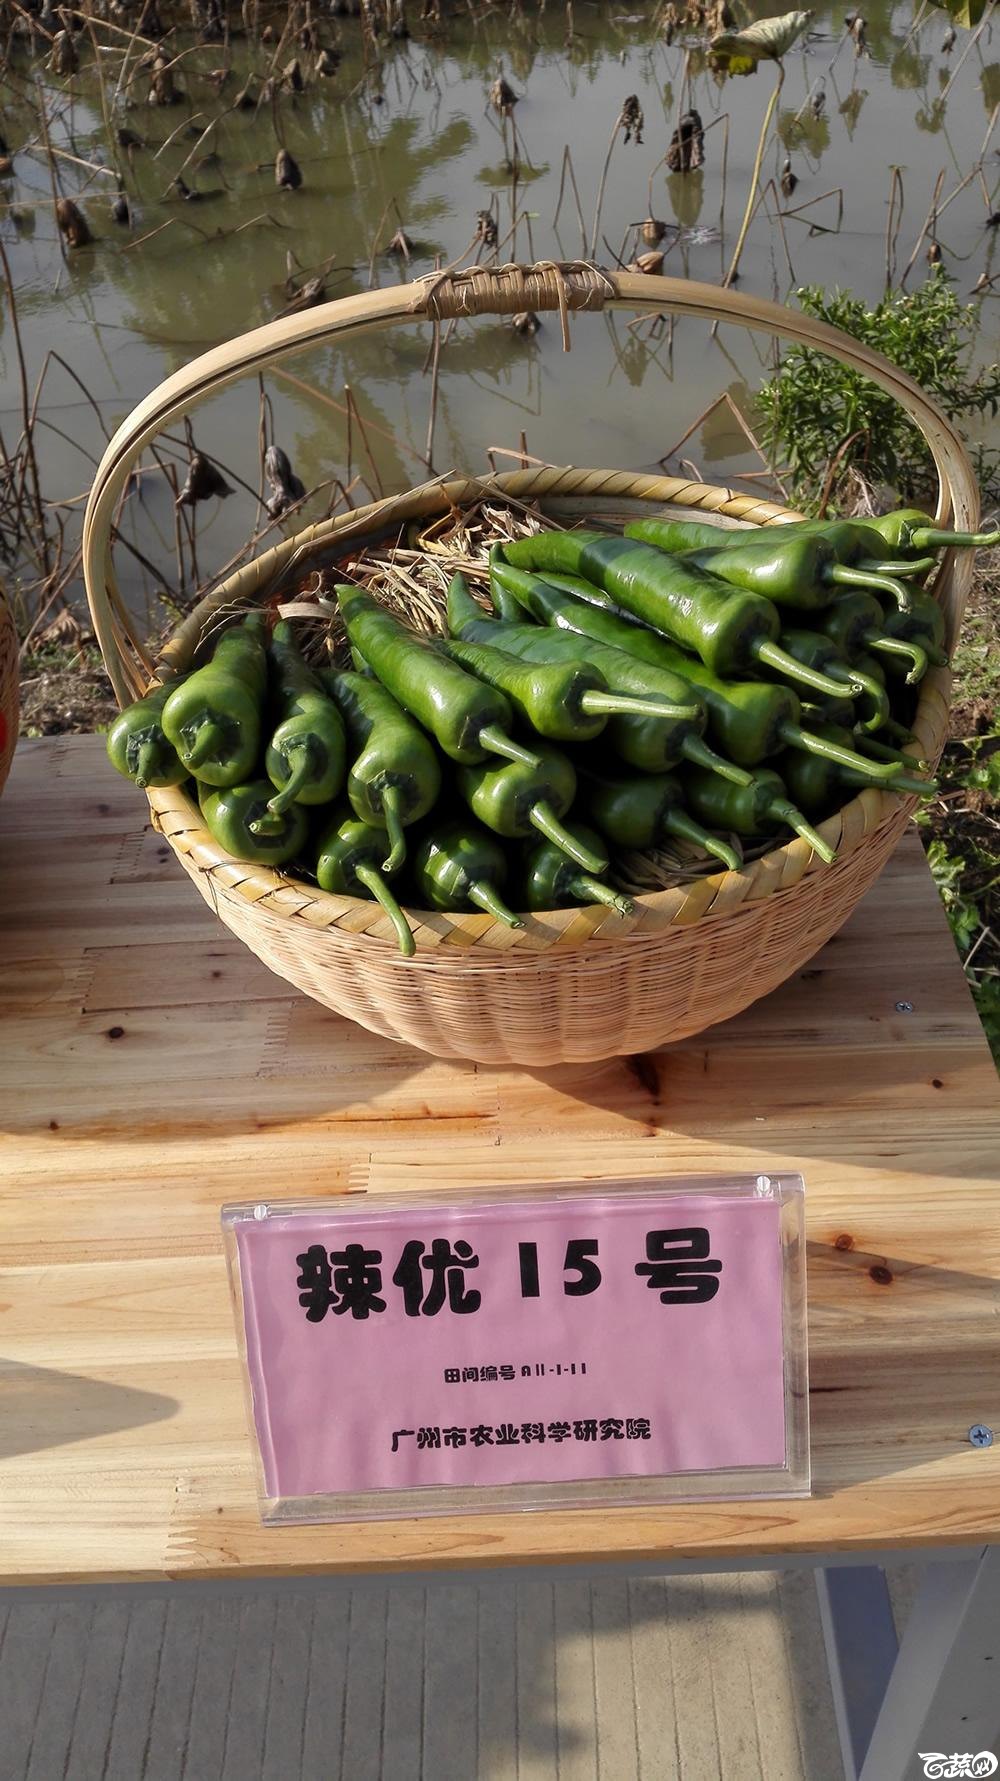 2014年12月10号广州市农科院南沙秋季蔬菜新品种展示会_辣椒_001.jpg